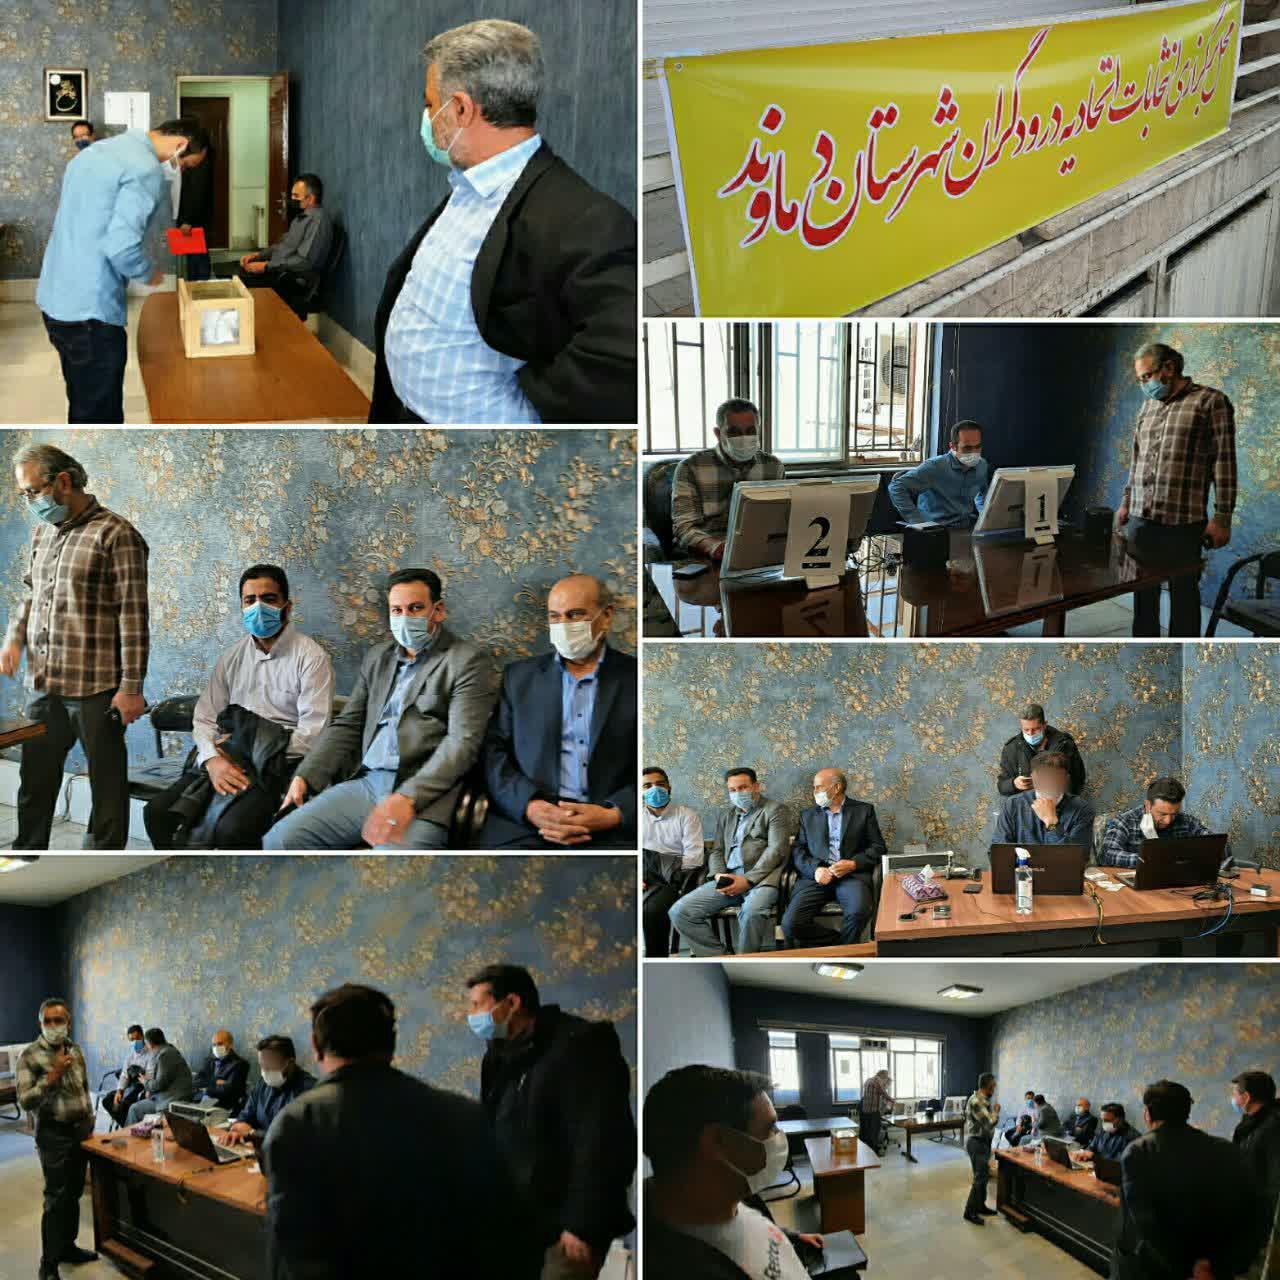 برگزاری انتخابات الکترونیکی اتحادیه صنف درودگران شهرستان دماوند